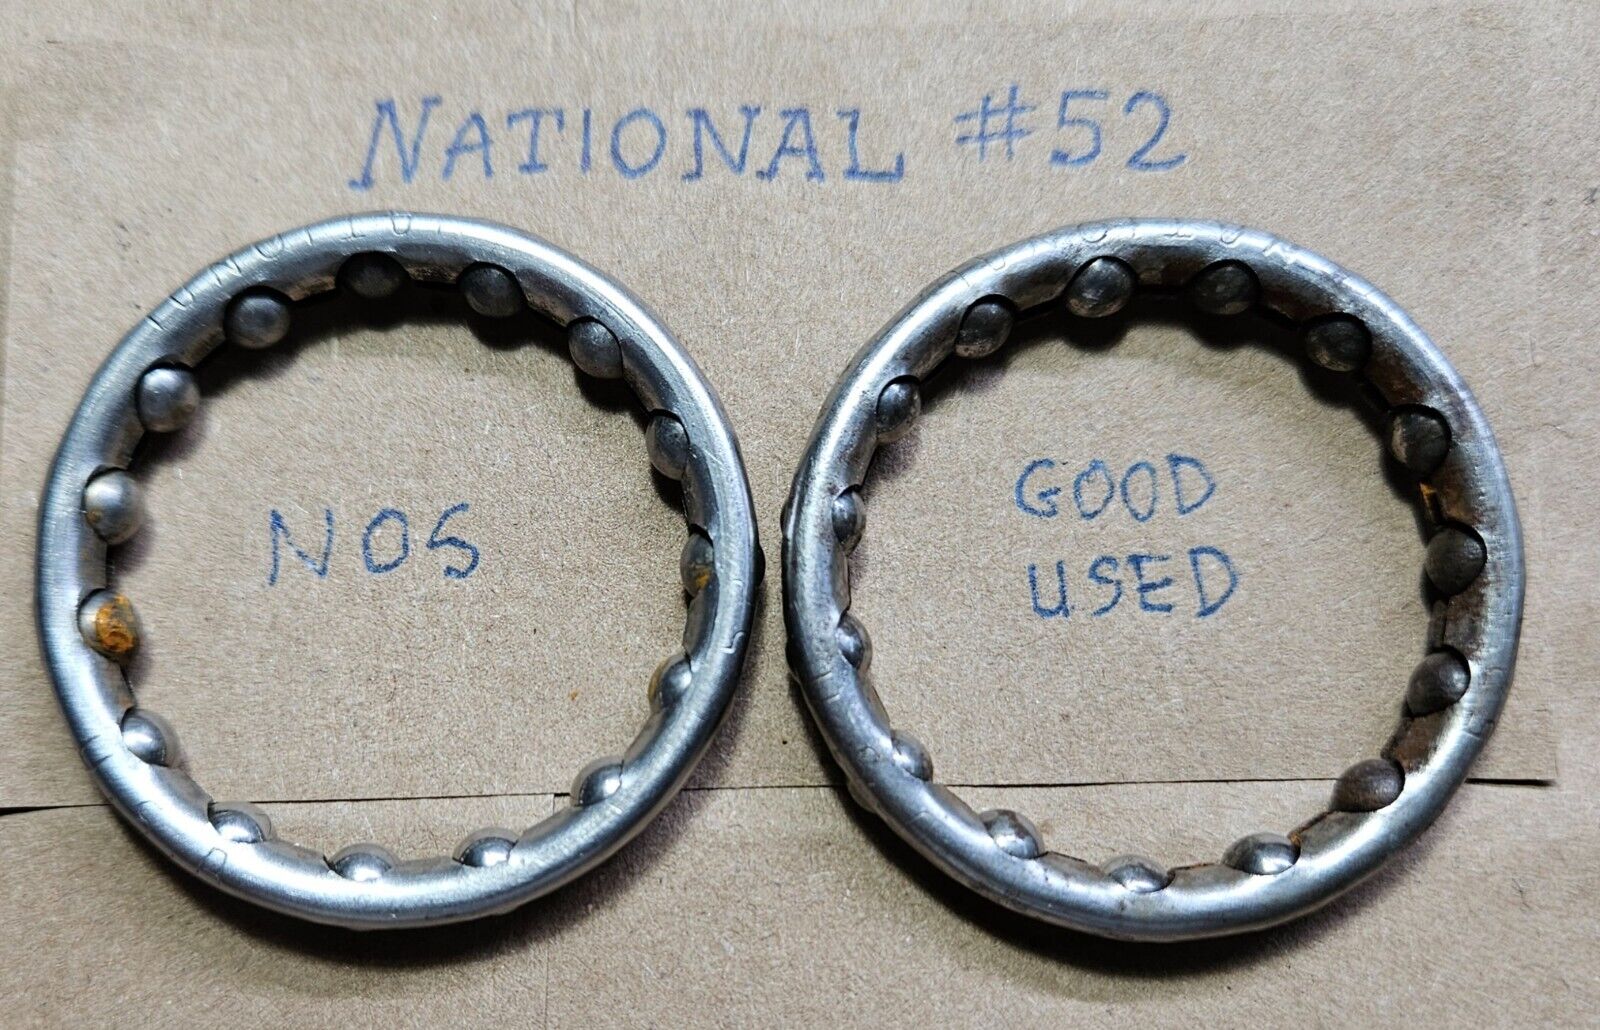 Vintage NOS National bearing retainer, Pair, # 52